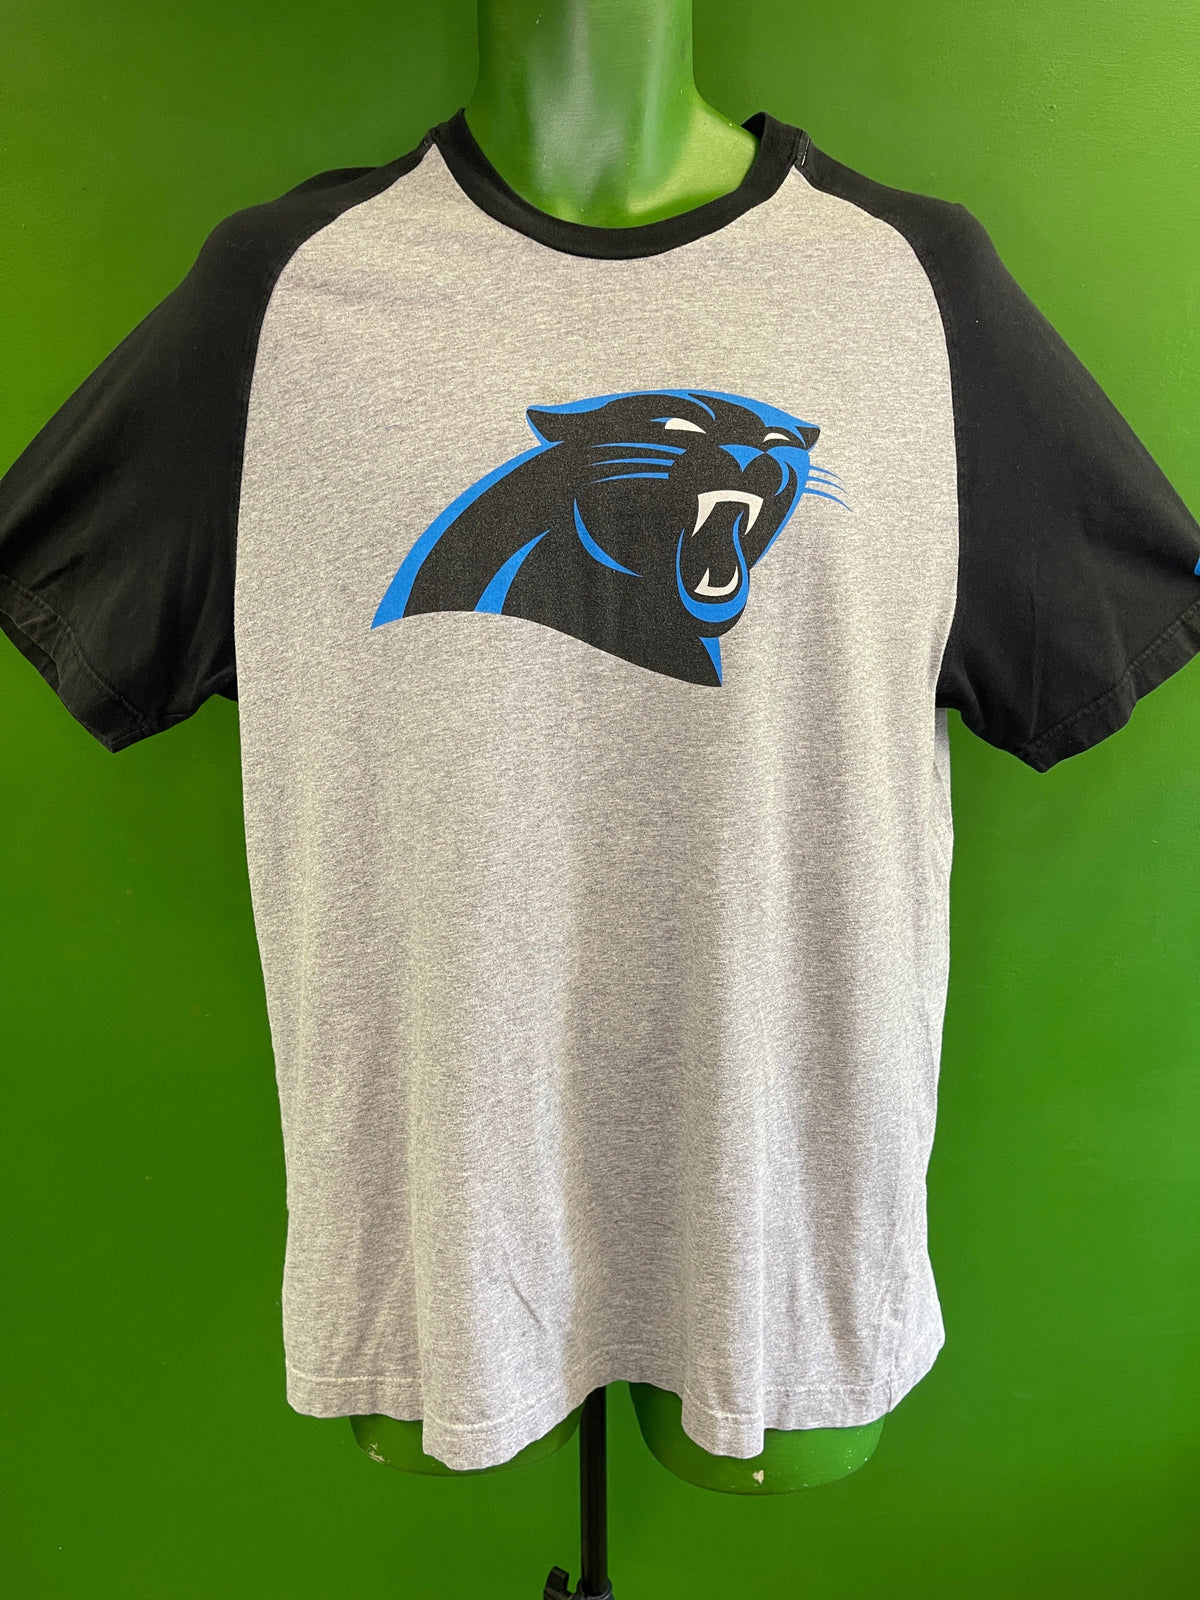 NFL Carolina Panthers Nike Raglan Sleeve T-Shirt Men's Large